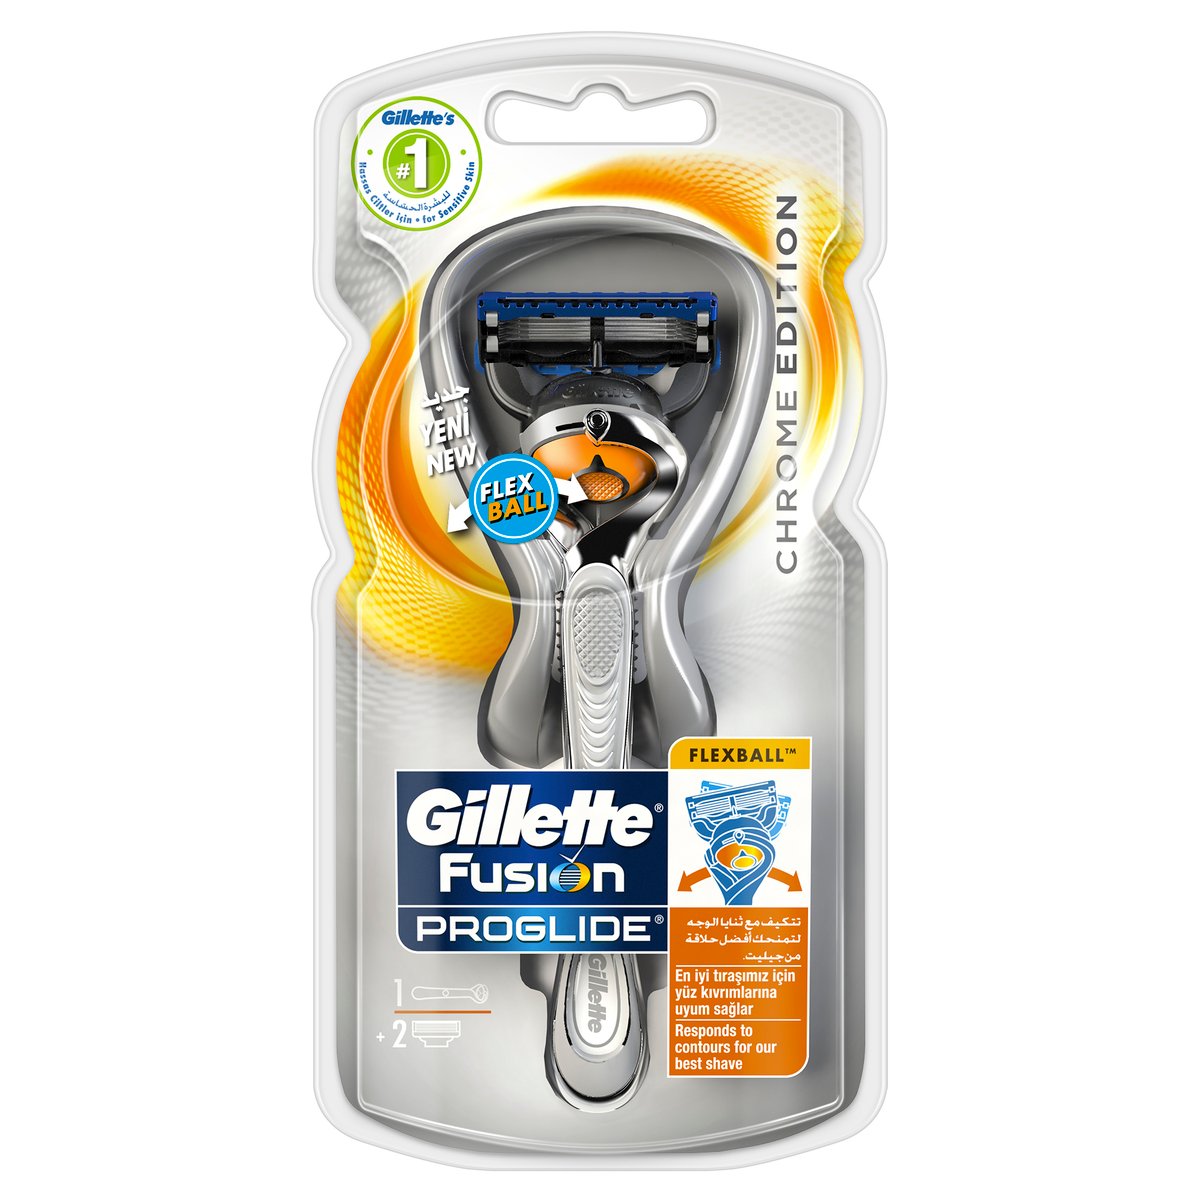 Gillette Fusion ProGlide Flexball Chrome Edition Razor